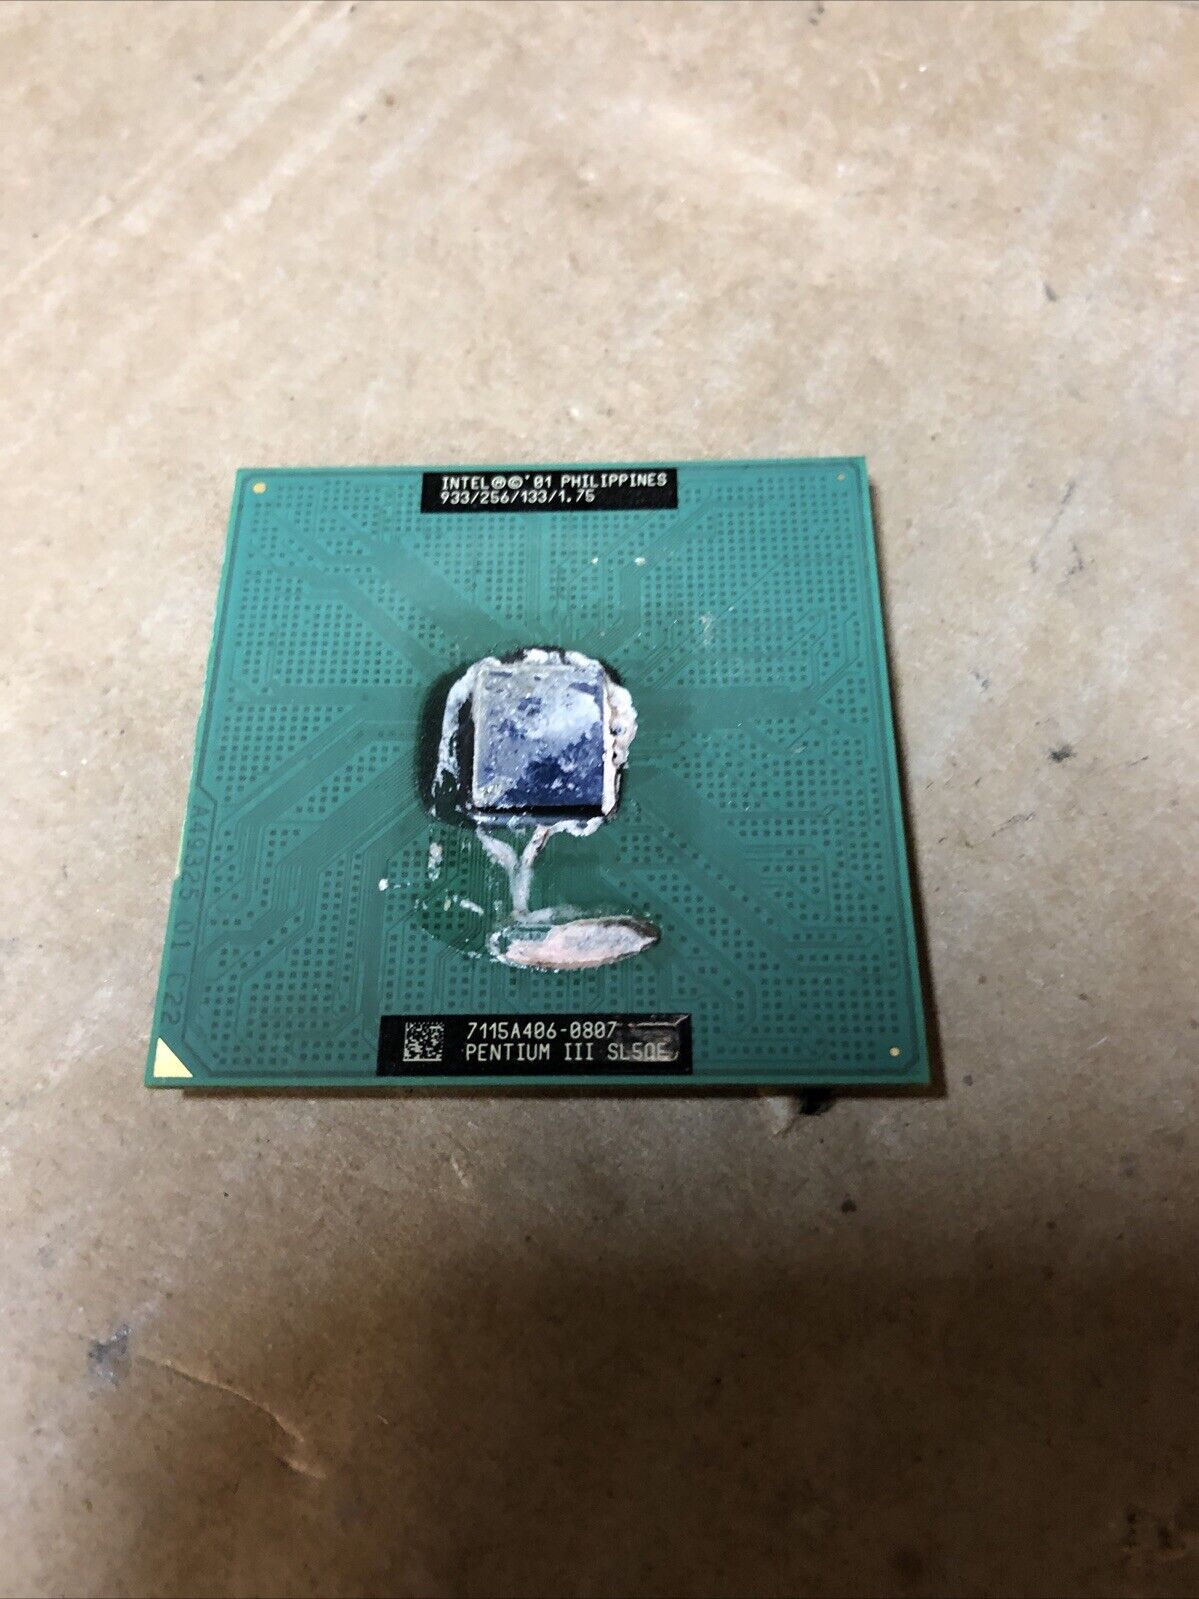 Intel Pentium III 1GHz 1000MHz SL5QF SMP CPU